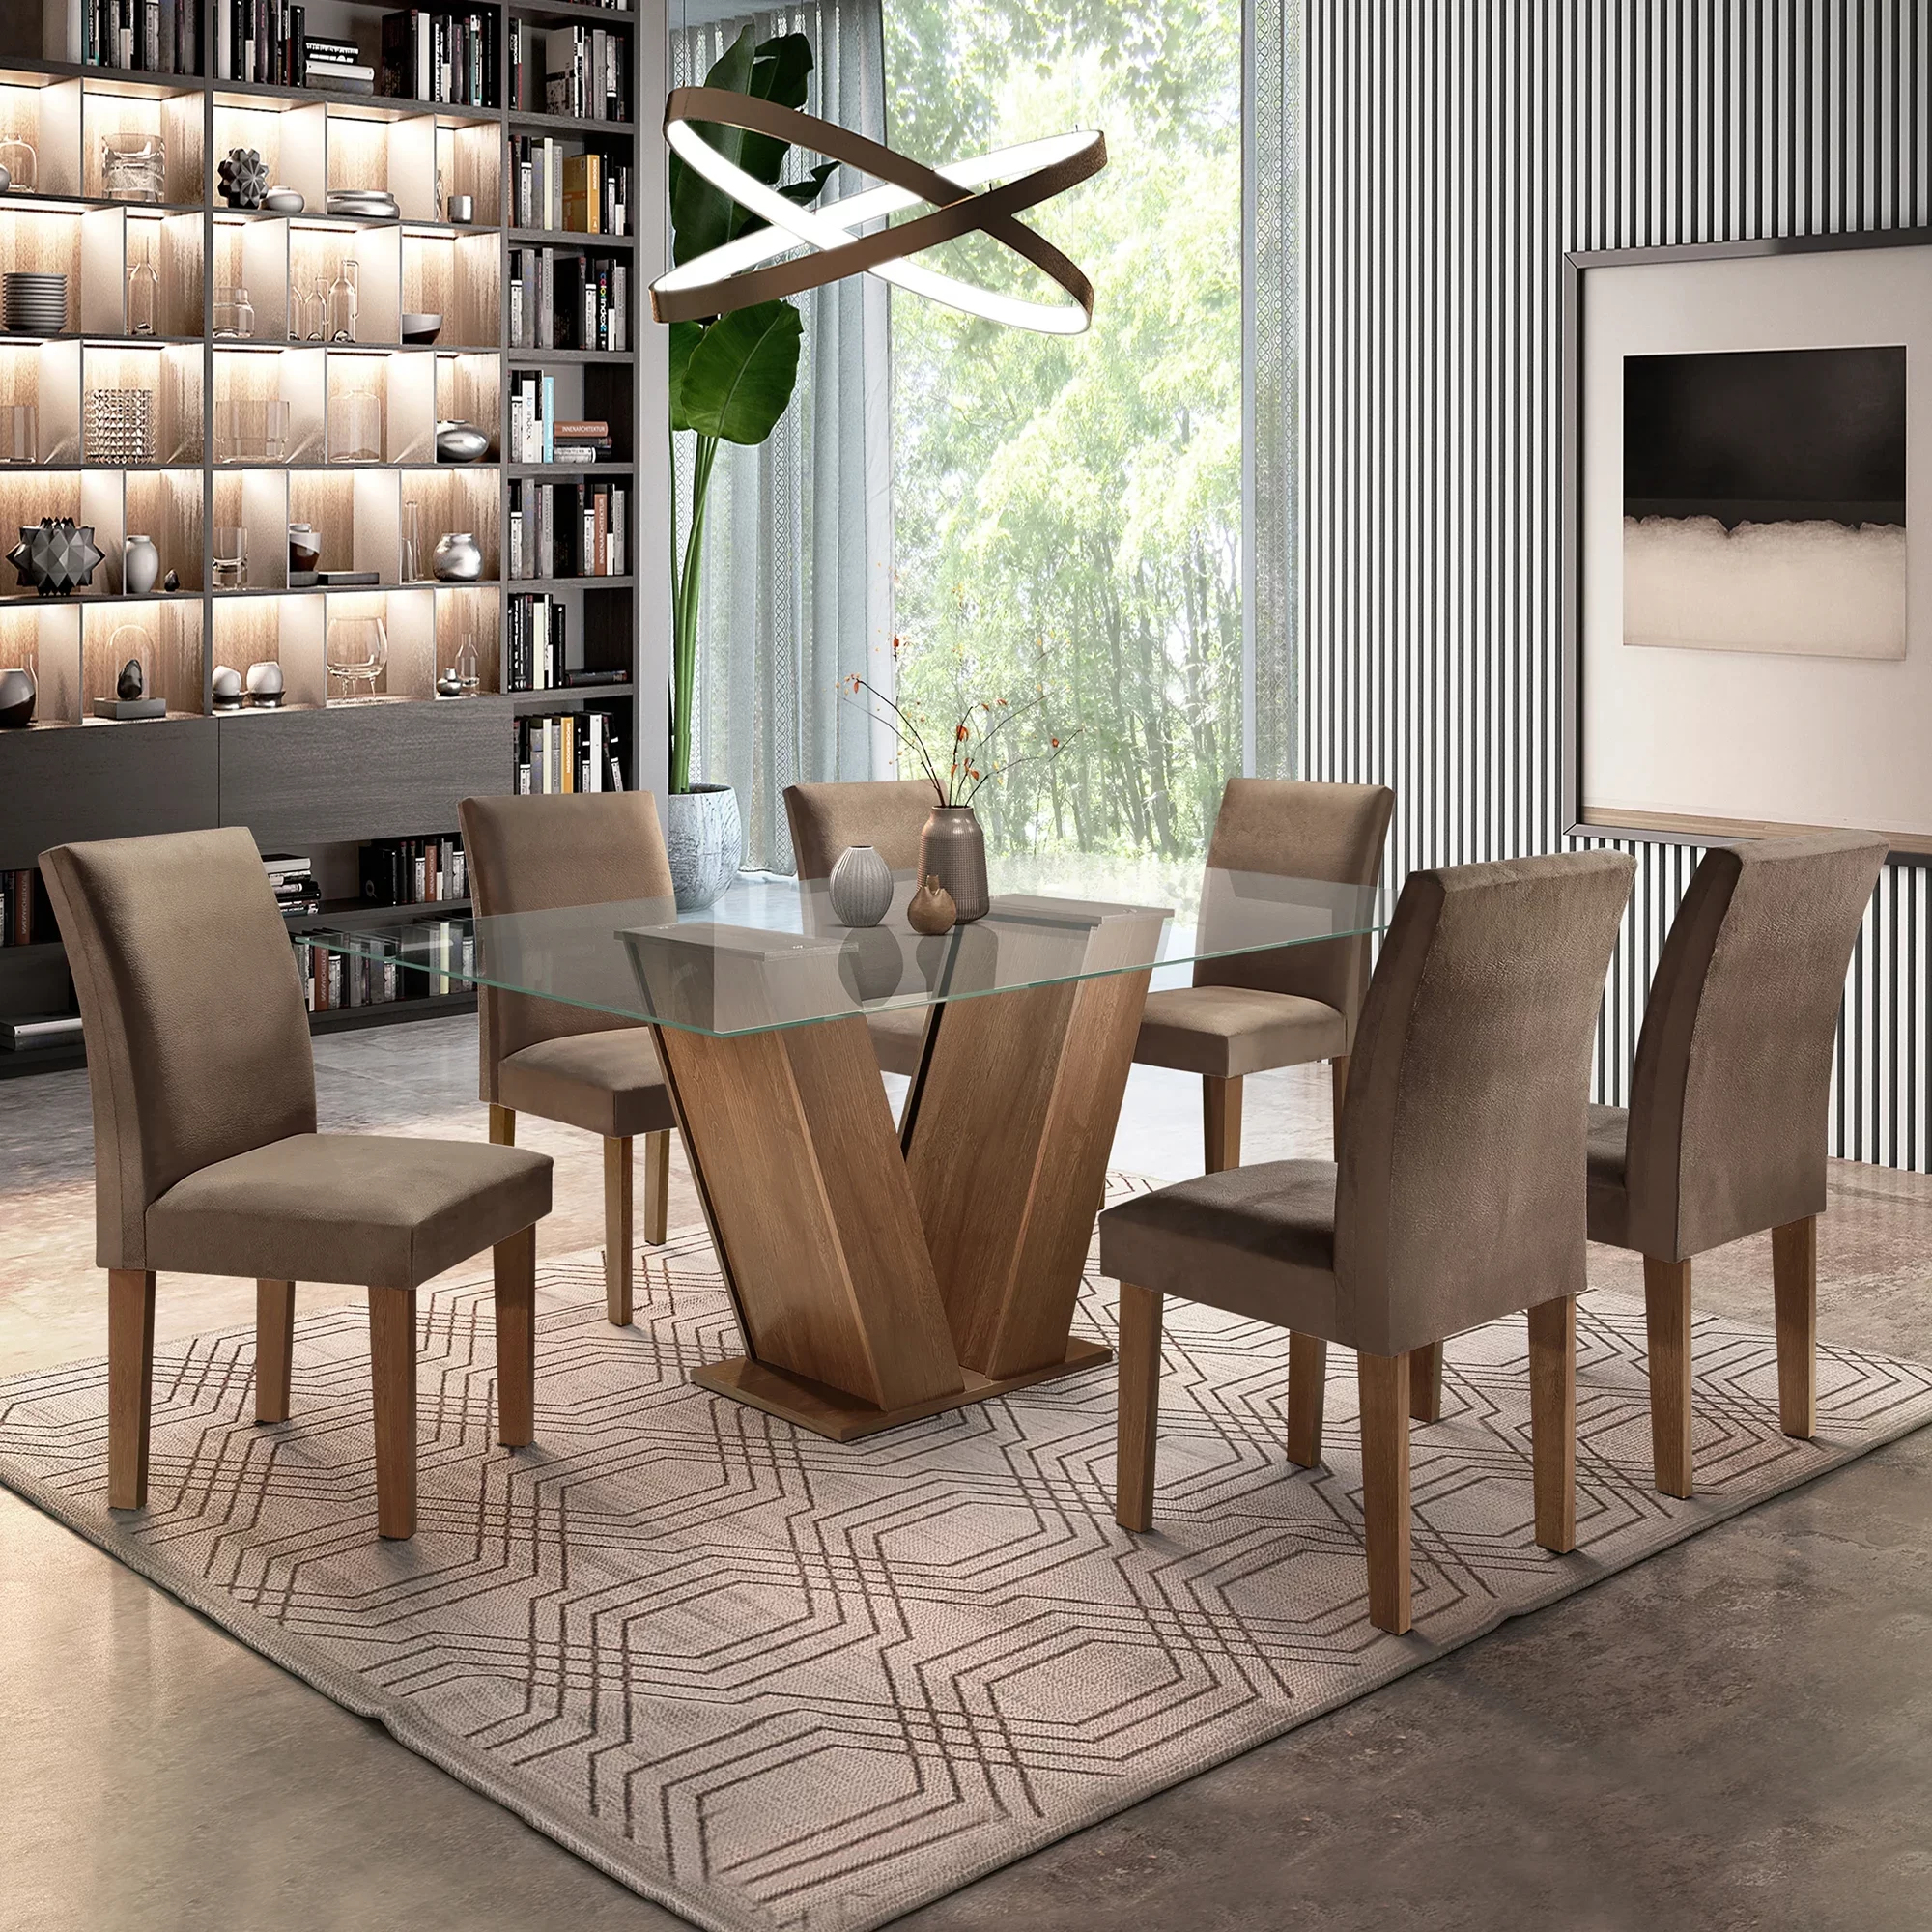 Conjunto sala de jantar mesa retangular madeira 6 cadeiras madeira